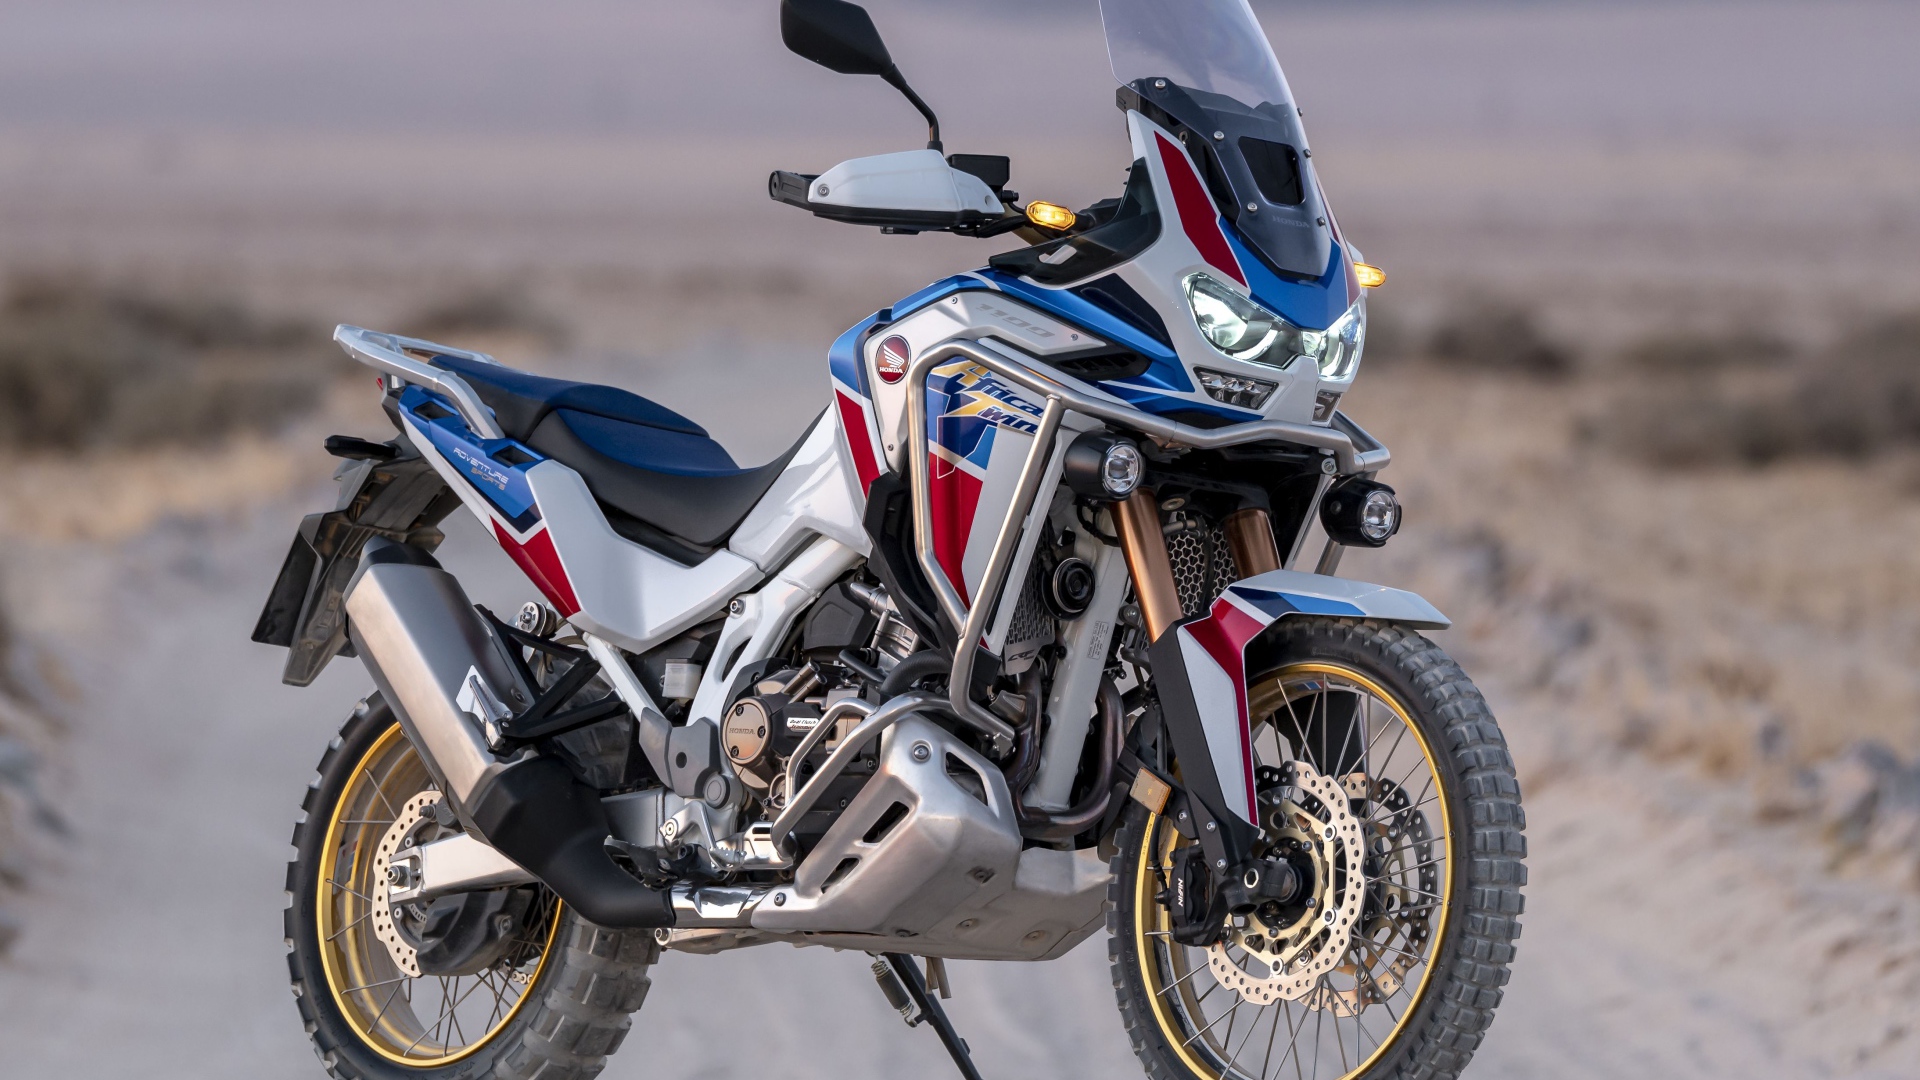 Новый мотоцикл Honda CRF1100L Africa Twin, 2021 года